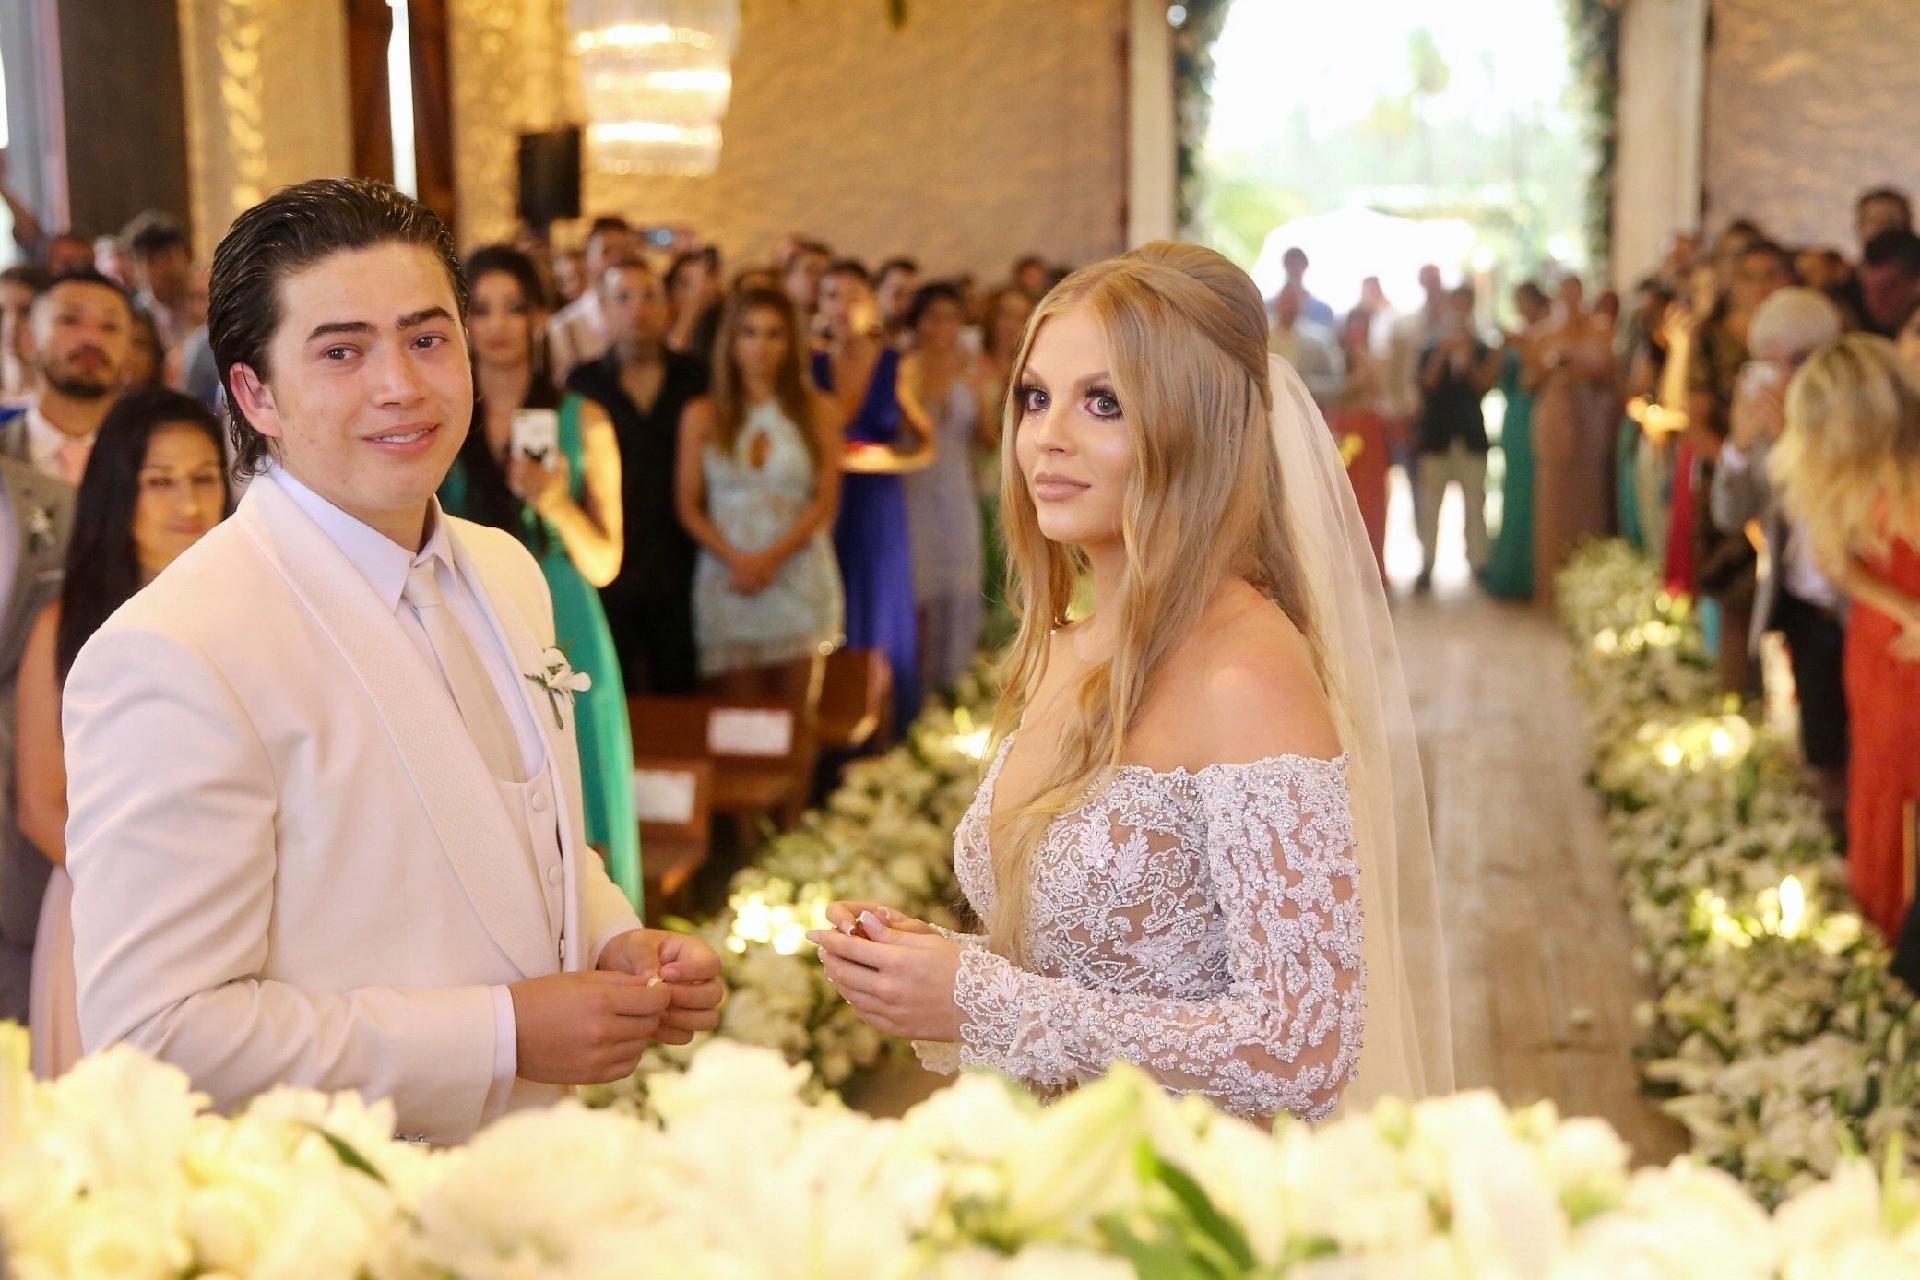 Fotos Veja Fotos Do Casamento De Whindersson Nunes E Lu Sa Sonza Uol Tv E Famosos